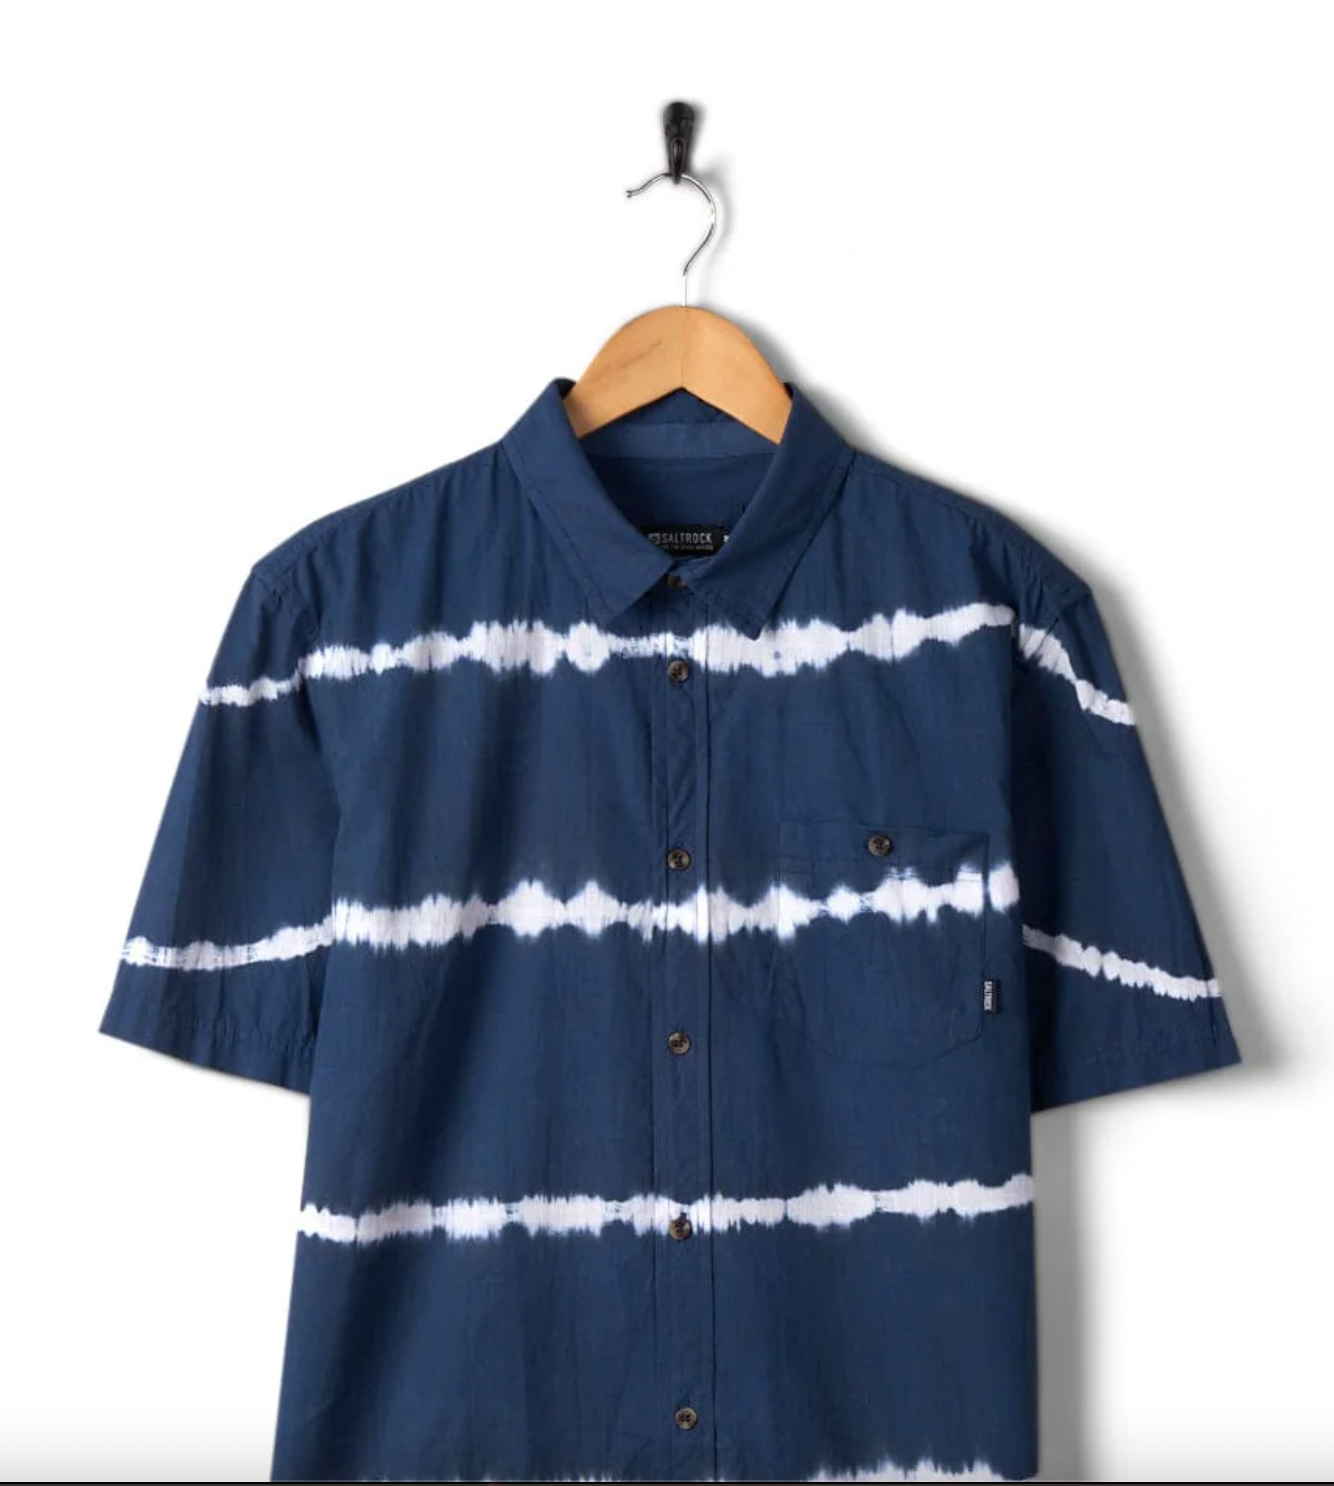 Ocean to - Mens Tie Dye Shirt - Blue